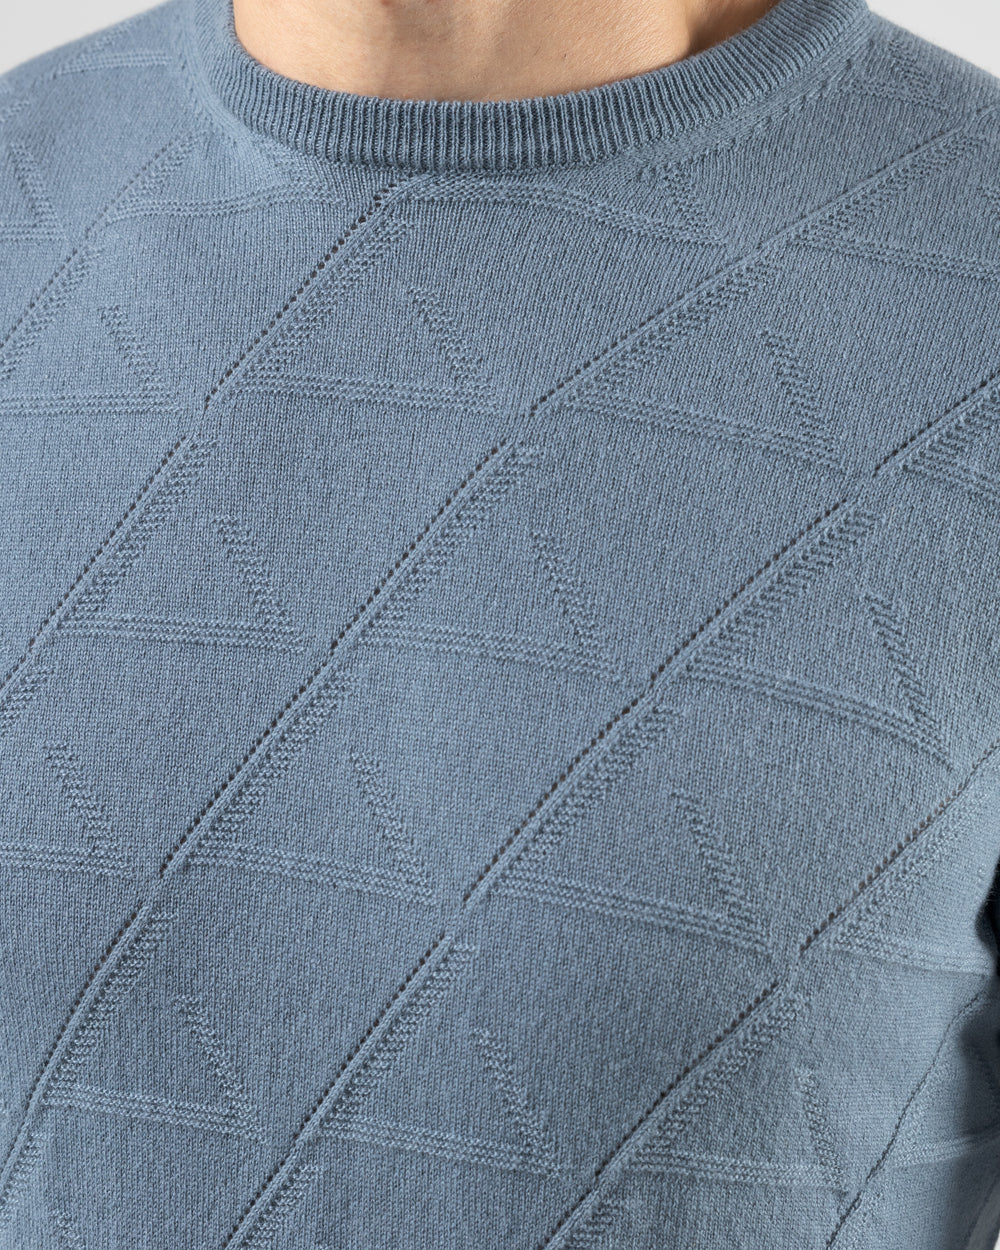 Sleet Sweater in Cashmere, Dusty Blue